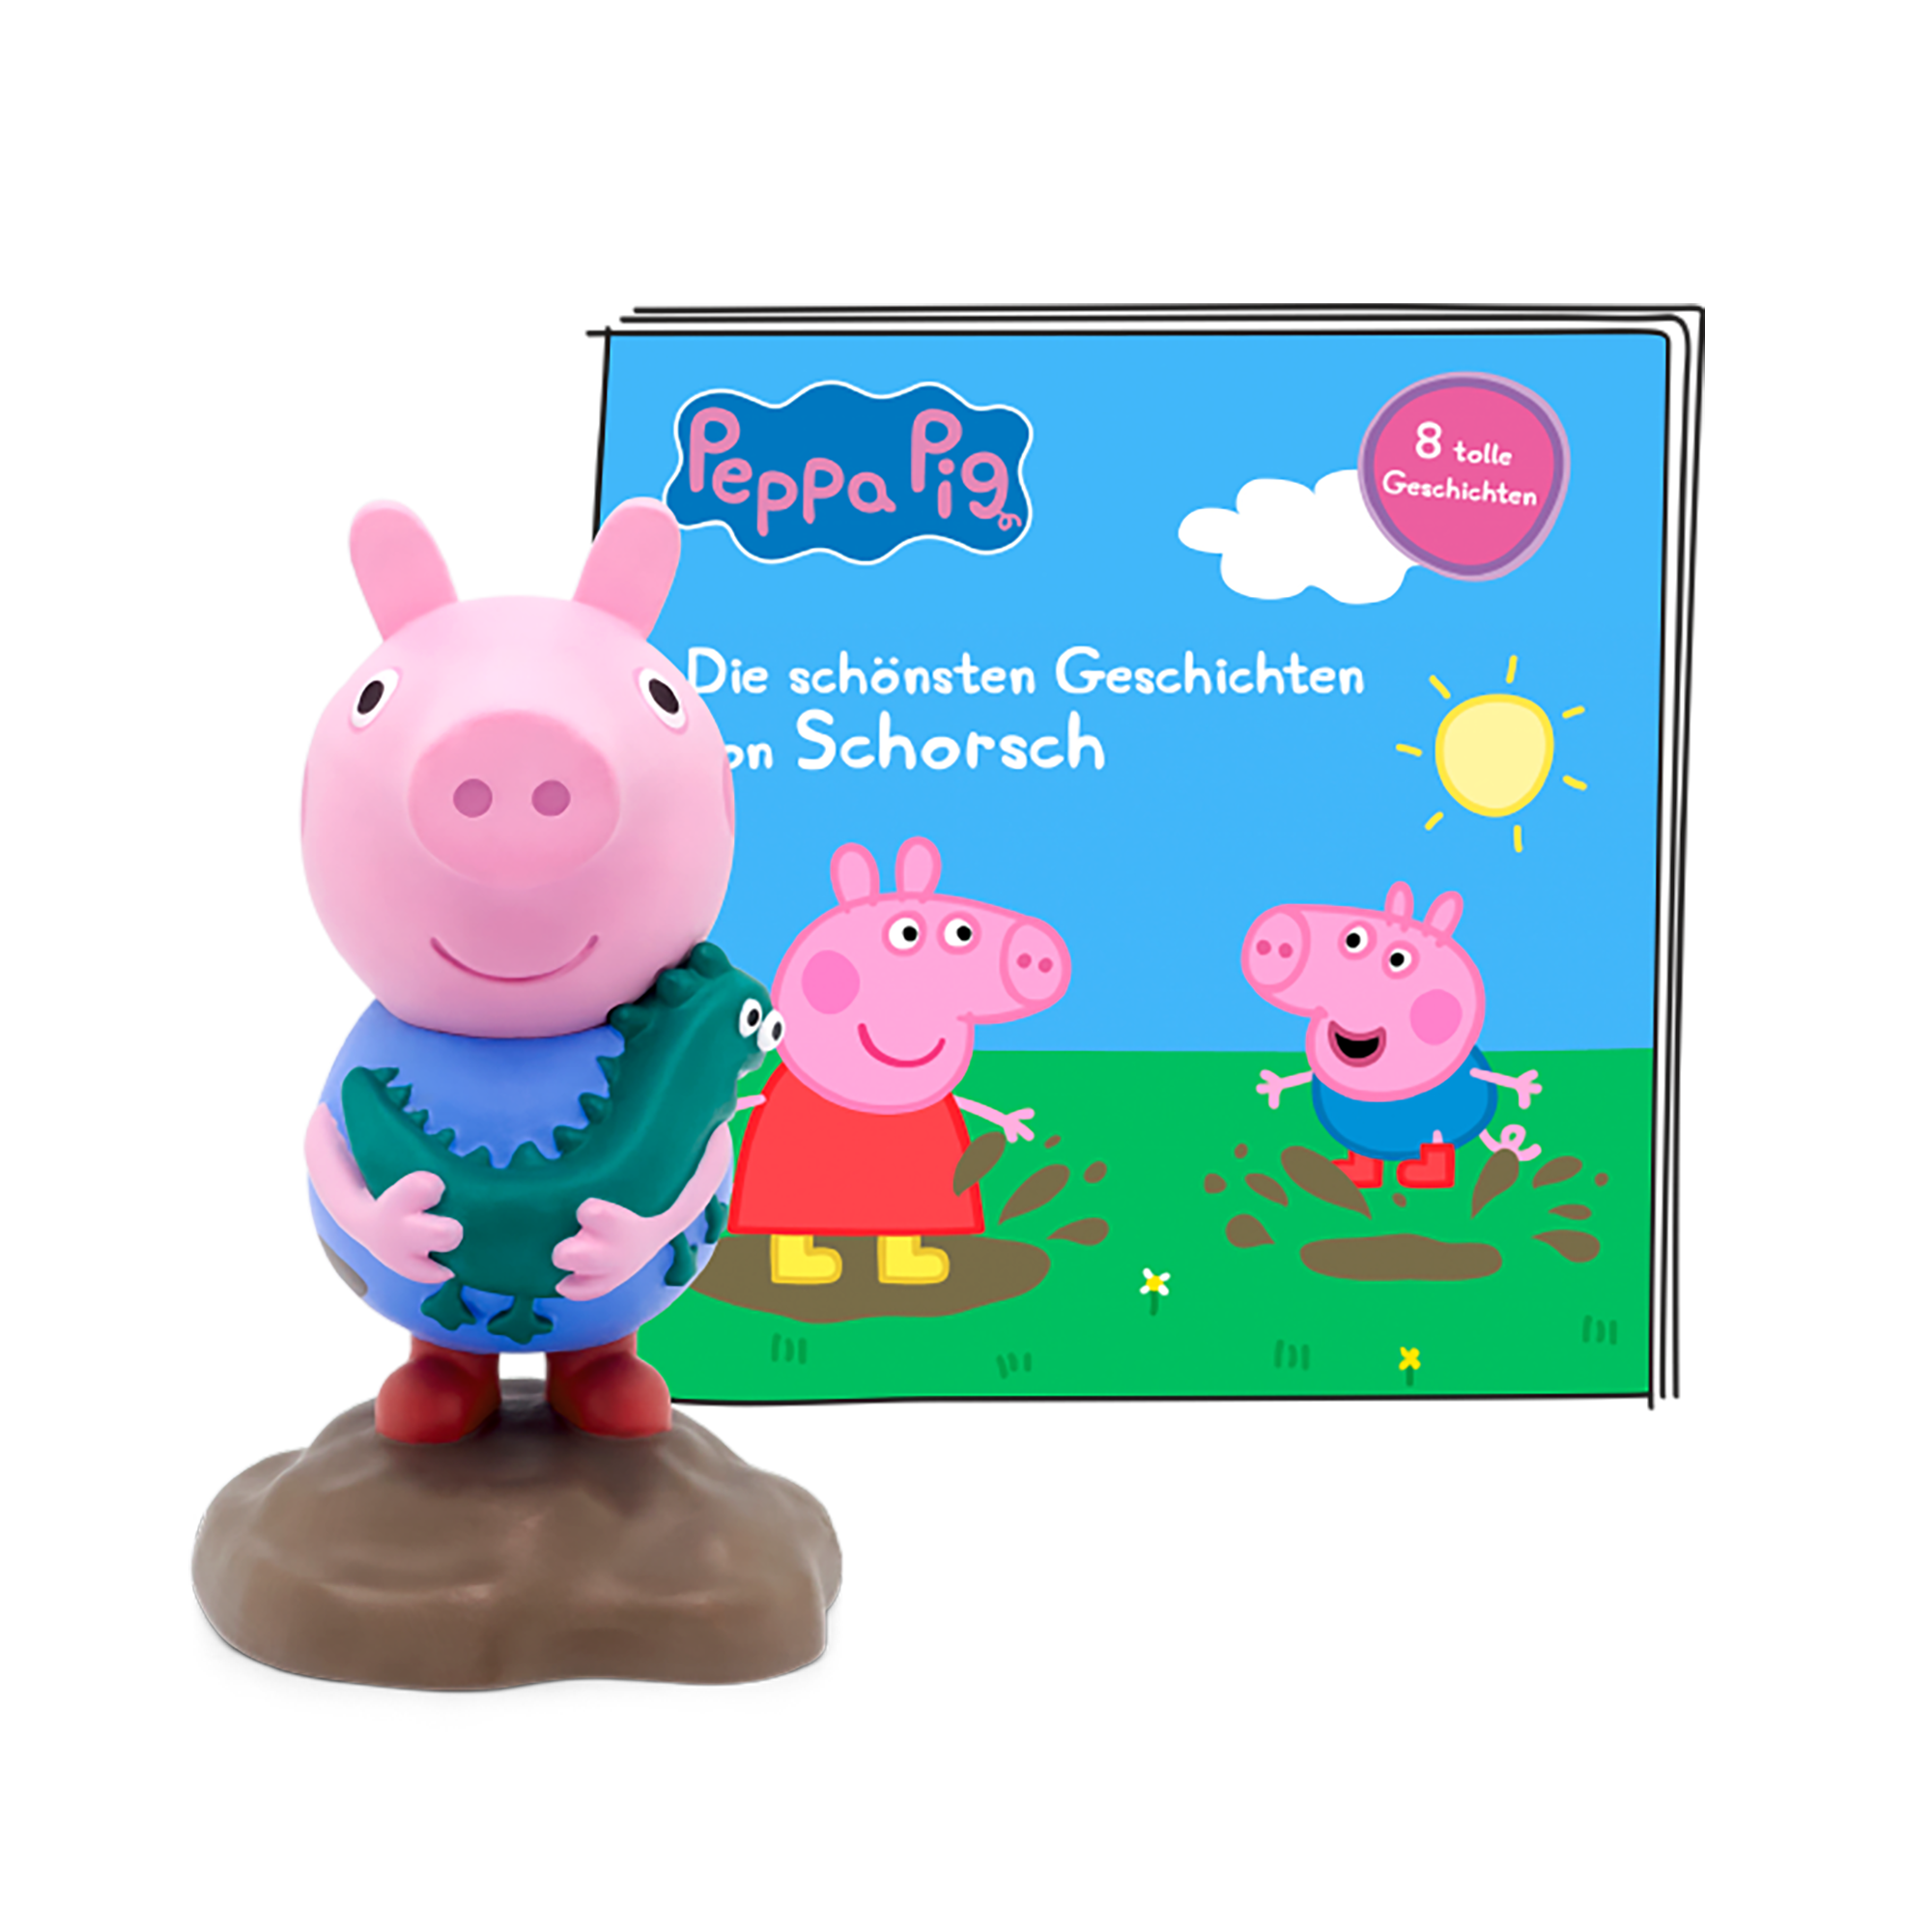 Peppa Pig - Die schönsten Geschichten von Schorsch tonies Rosa 2000584385805 1